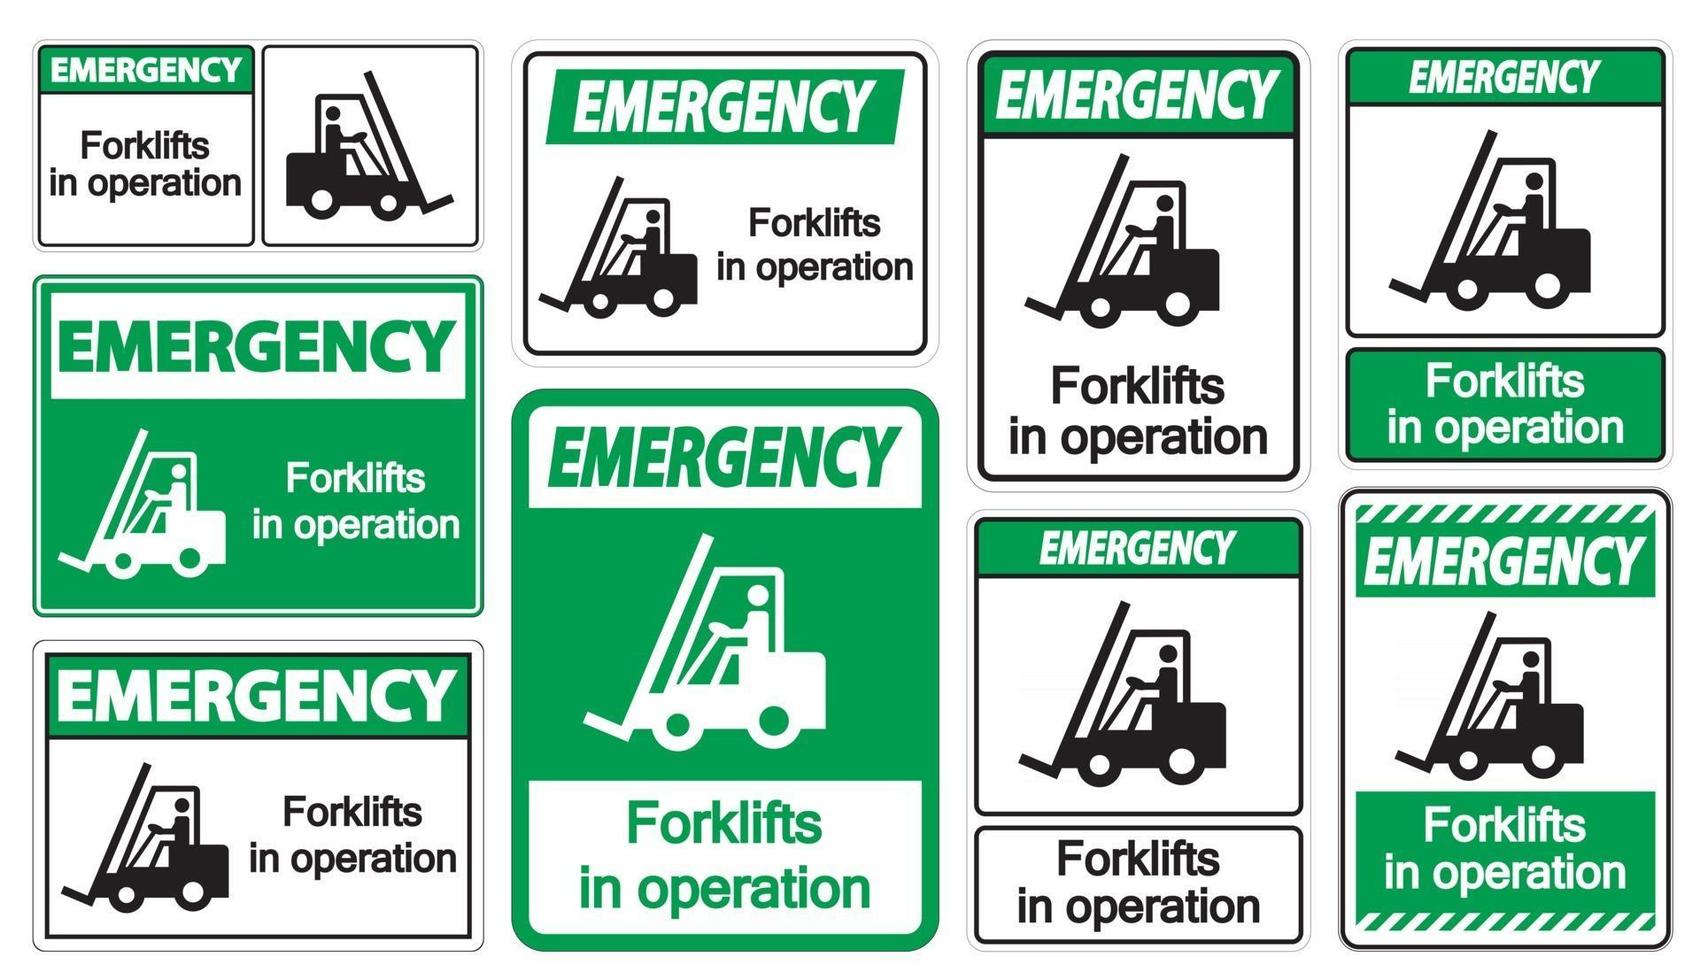 carrelli elevatori di emergenza in funzione simbolo segno isolare su sfondo trasparente,illustrazione vettoriale